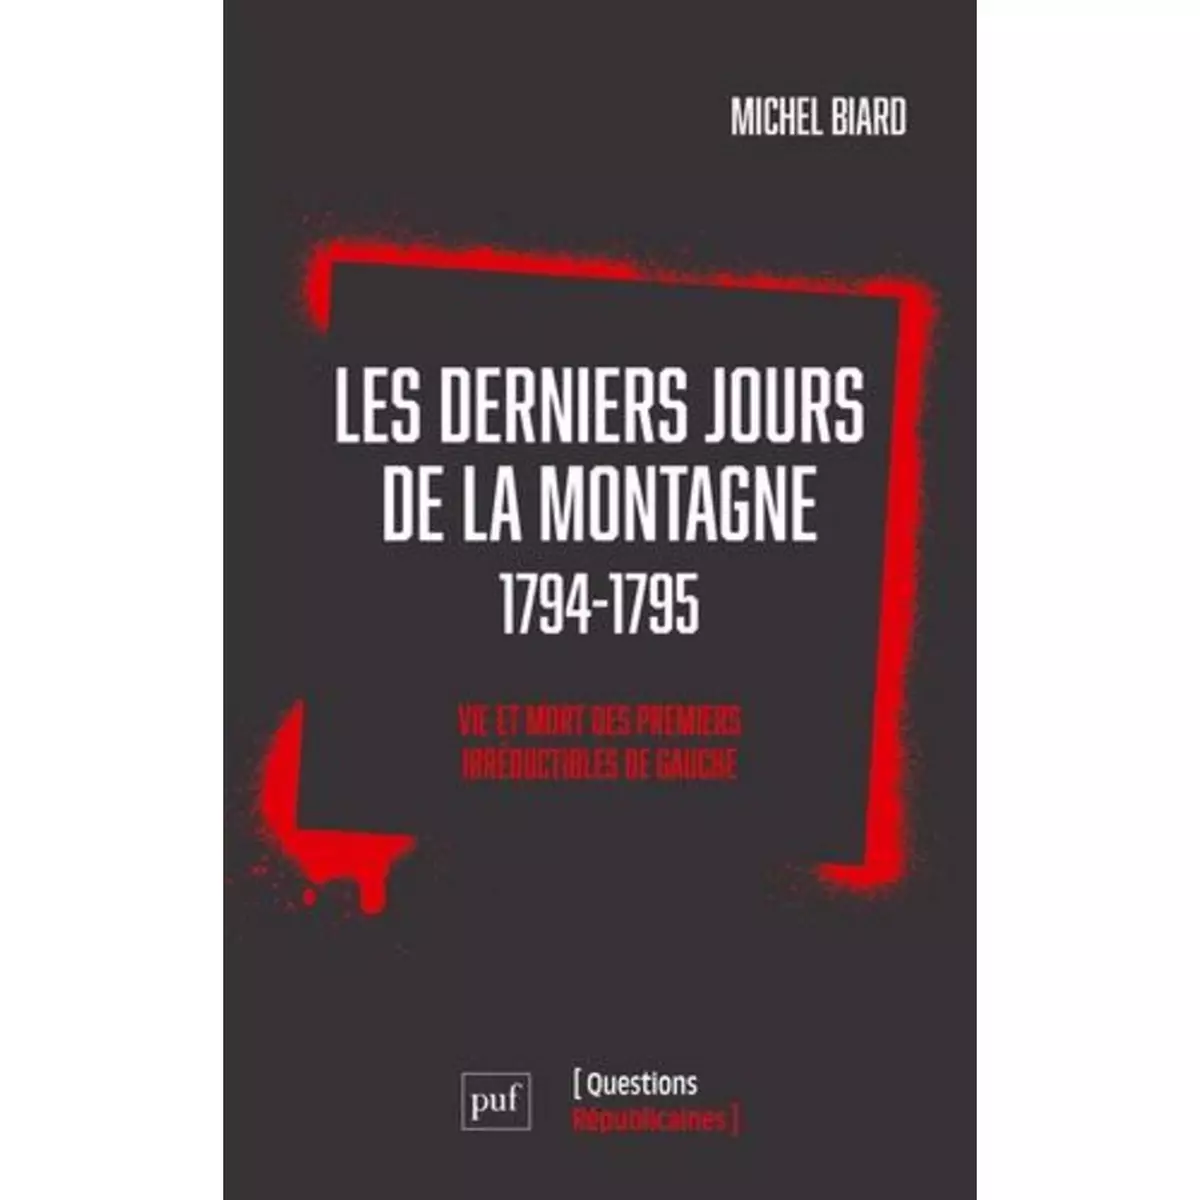  LES DERNIERS JOURS DE LA MONTAGNE (1794-1795). VIE ET MORT DES PREMIERS IRREDUCTIBLES DE GAUCHE, Biard Michel